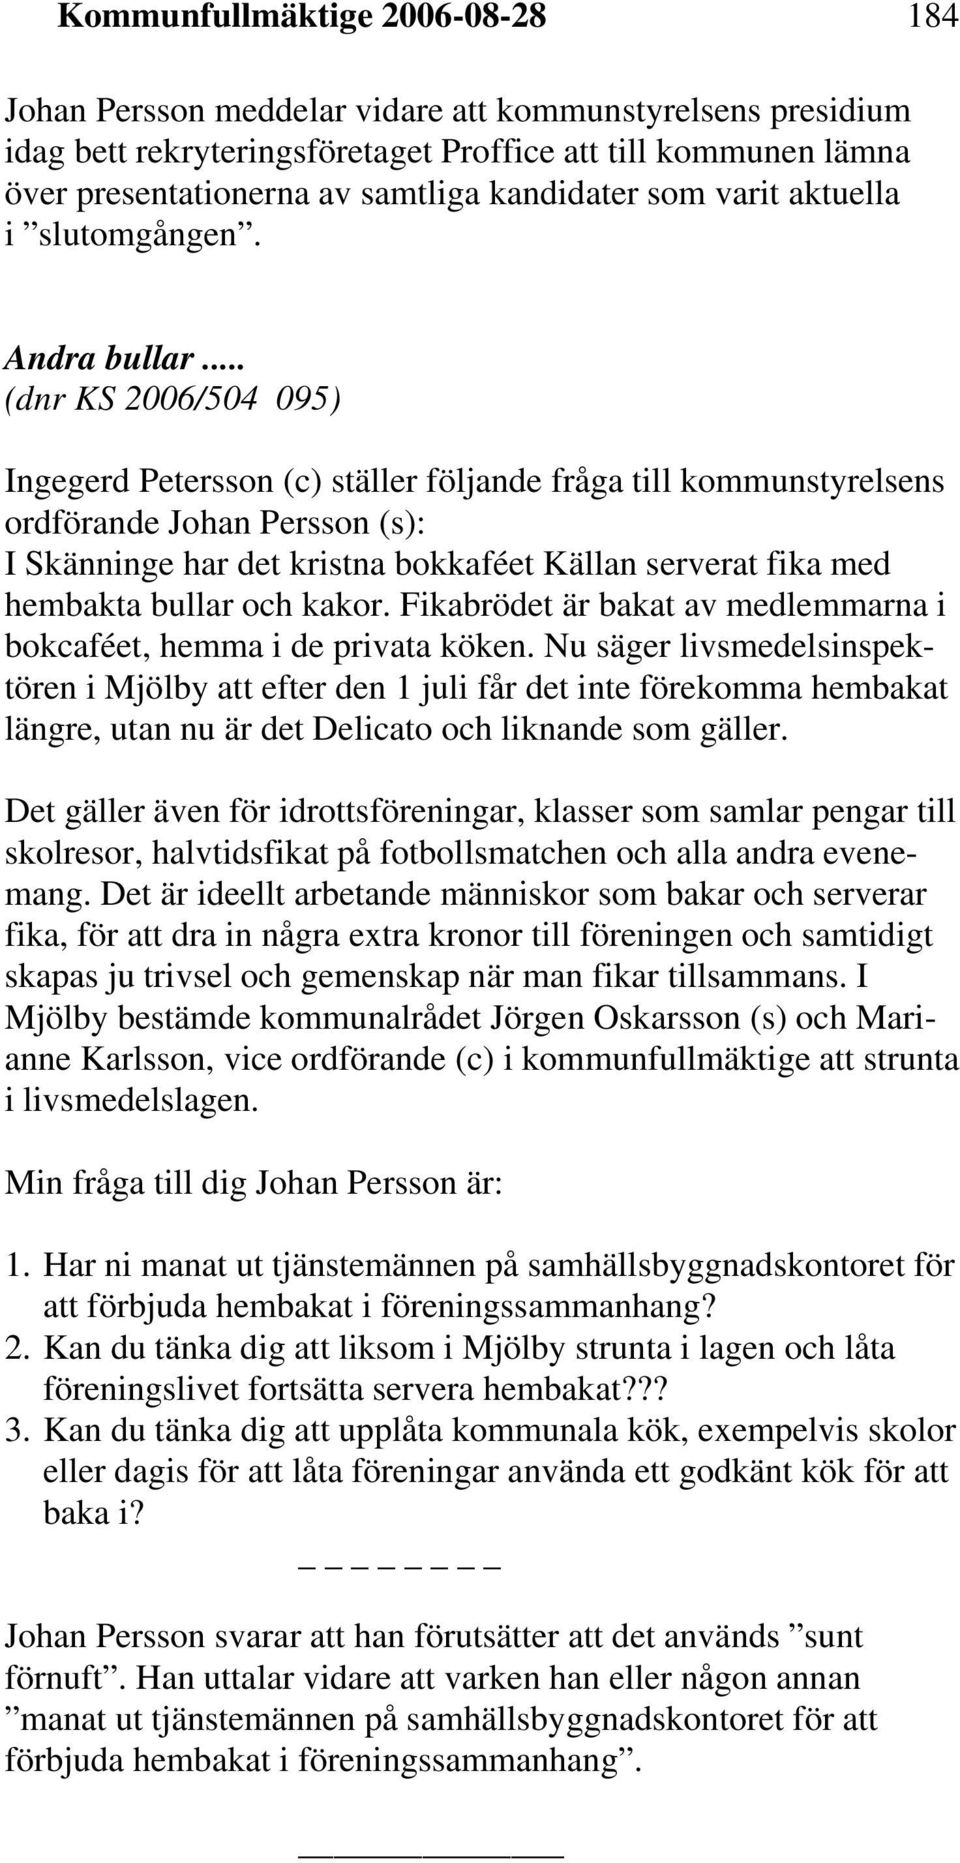 .. (dnr KS 2006/504 095) Ingegerd Petersson (c) ställer följande fråga till kommunstyrelsens ordförande Johan Persson (s): I Skänninge har det kristna bokkaféet Källan serverat fika med hembakta